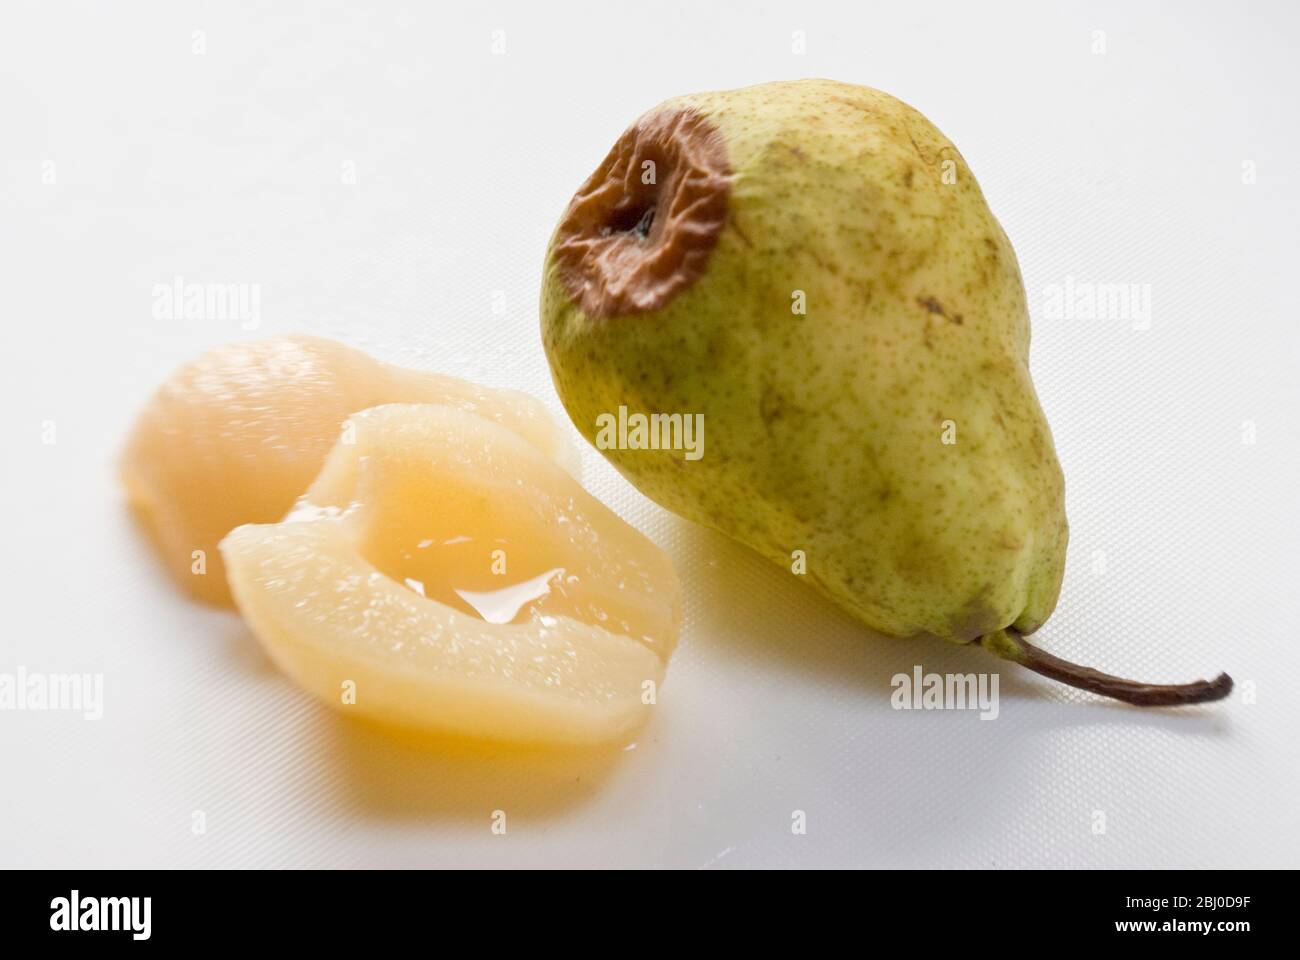 Comparación de la pera fresca cruda, comenzando a pudrirse con peras enlatadas mostrando la ventaja de la fruta enlatada. - Foto de stock